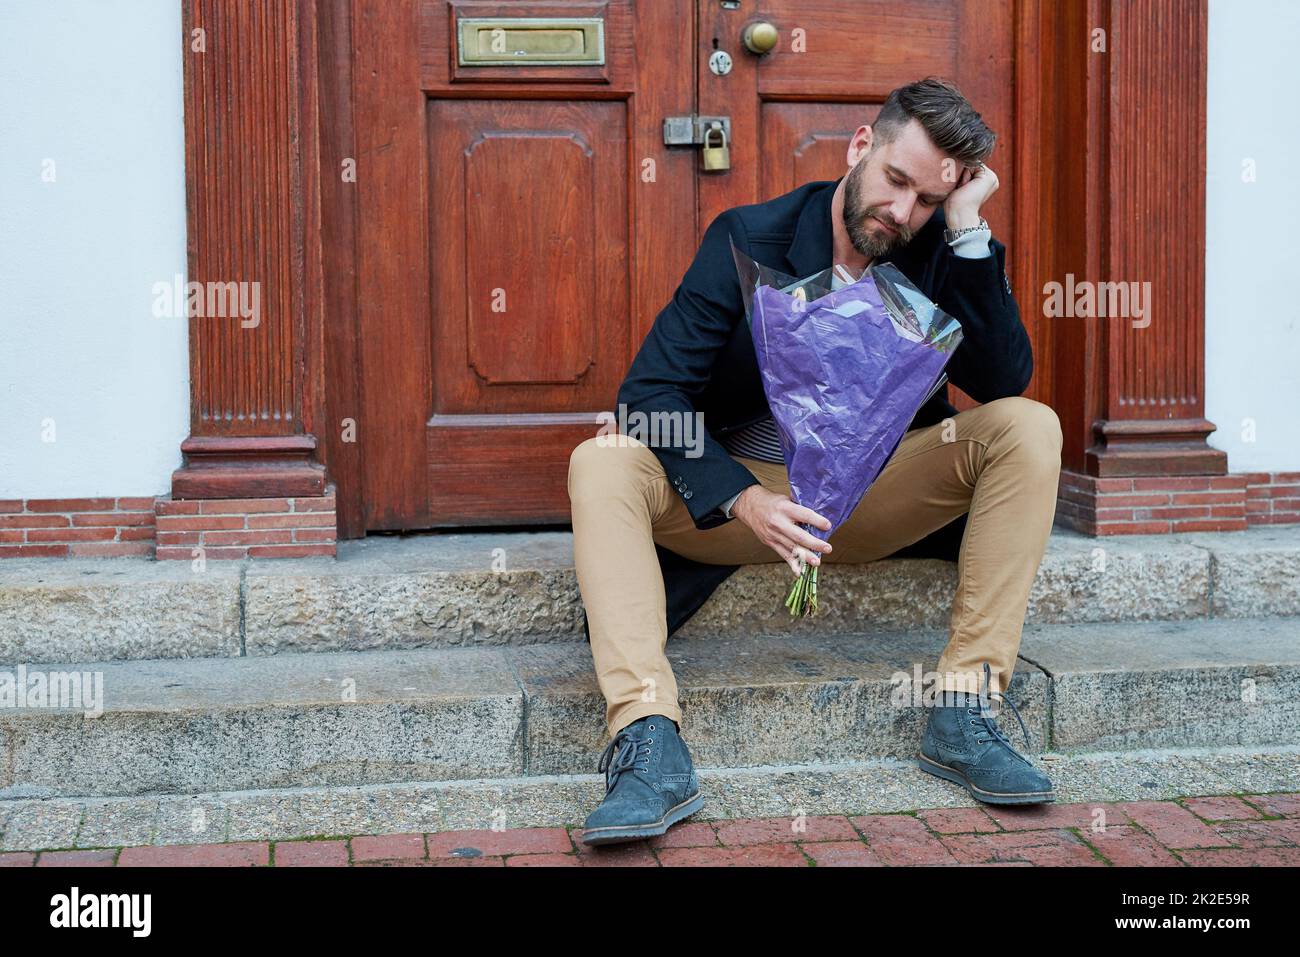 Angesichts der kalten Schulter. Aufnahme eines hübschen jungen Mannes, der deprimiert aussieht, während er mit einem Blumenstrauß auf einer Stufe wartet. Stockfoto